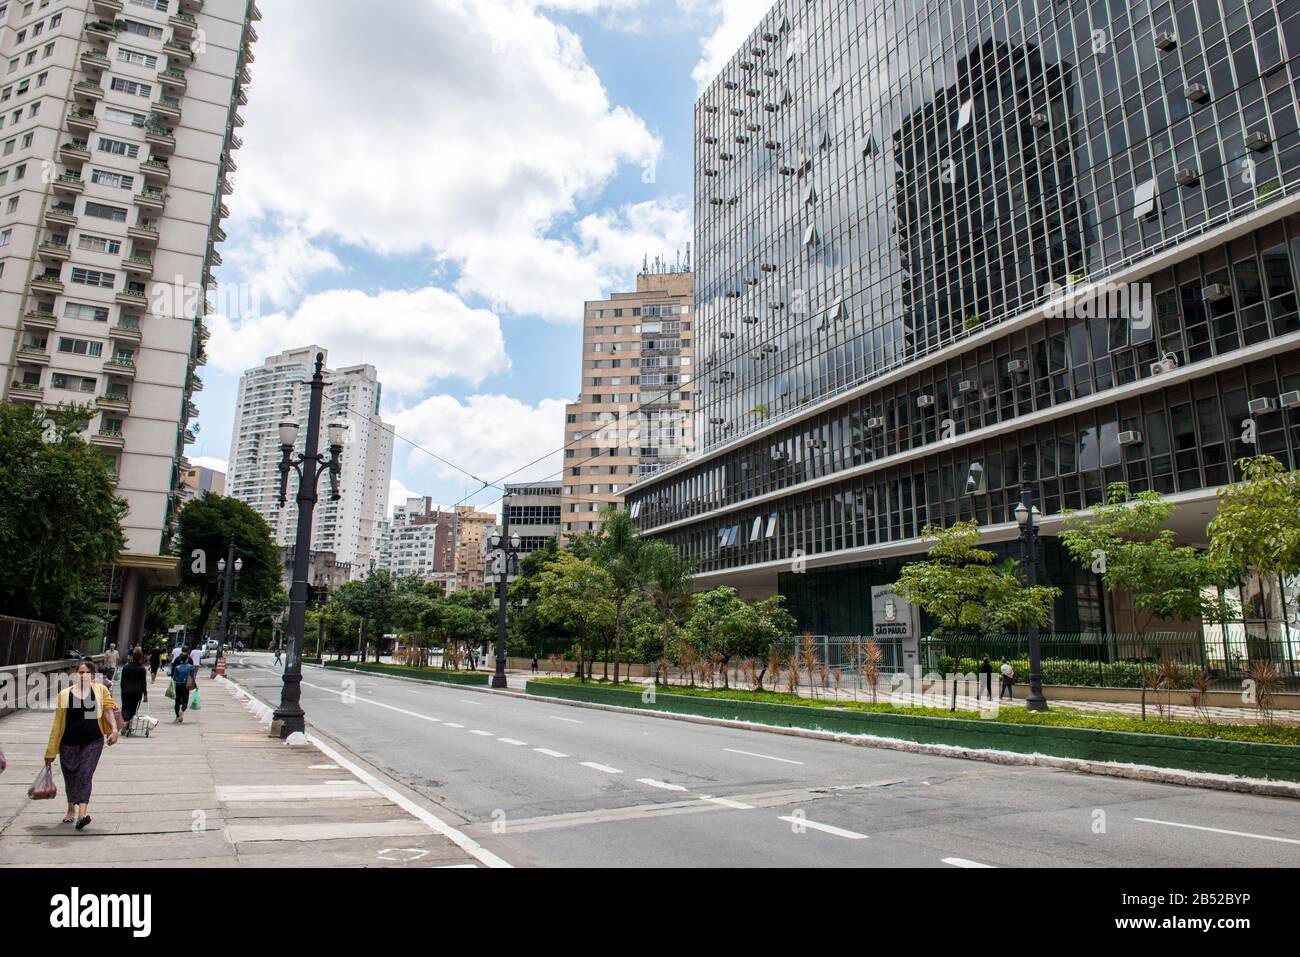 Sao PAULO, BRÉSIL - 01 MARS 2020: Image horizontale de grandes rues avec de vieux bâtiments dans la vieille ville de Sao Paulo, Brésil Banque D'Images